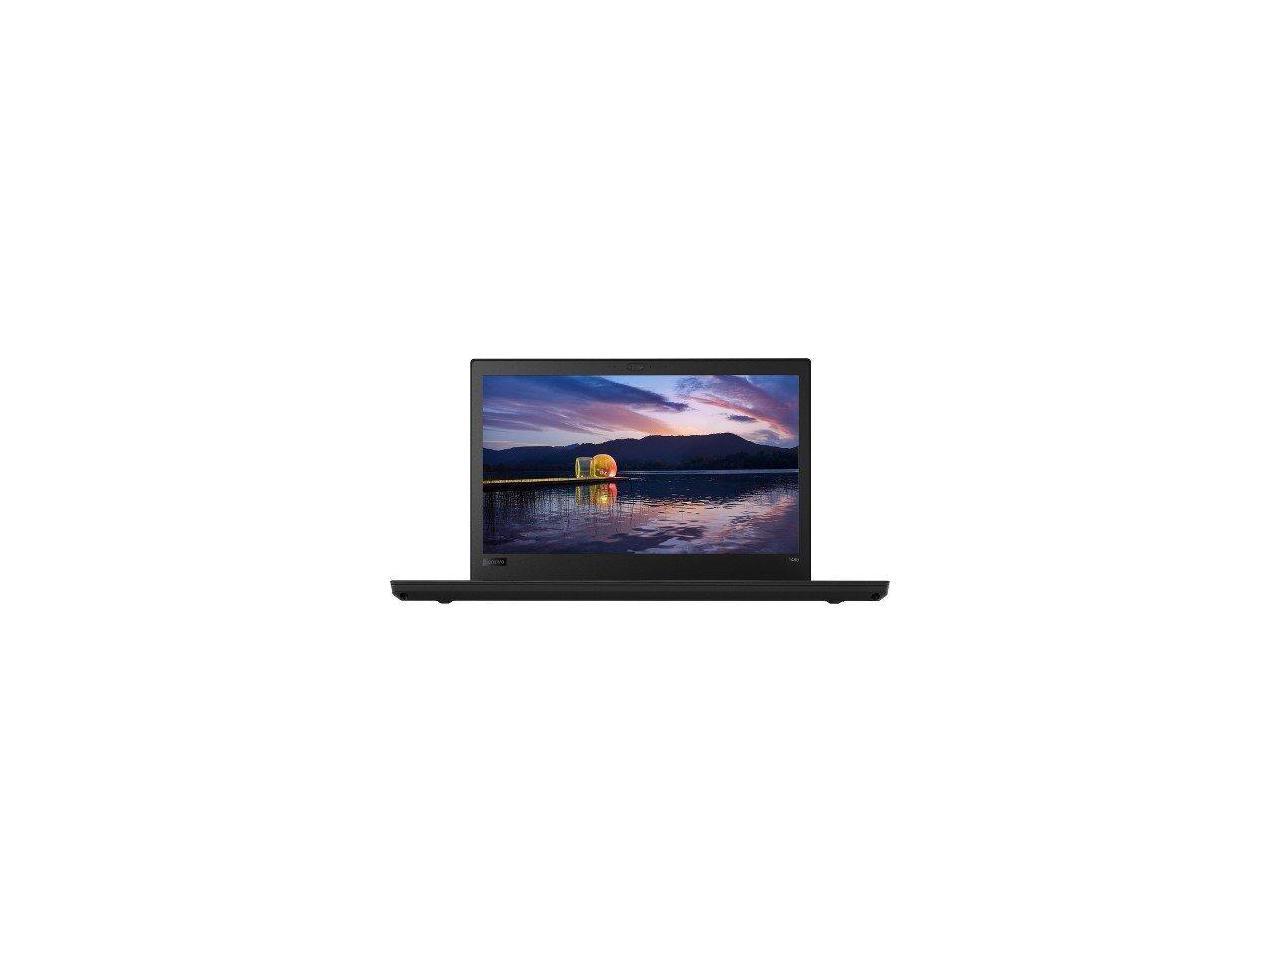 Lenovo ThinkPad T480 20L50054US 14" Laptop i5-8350U 4GB 500GB HDD Windows 10 Pro